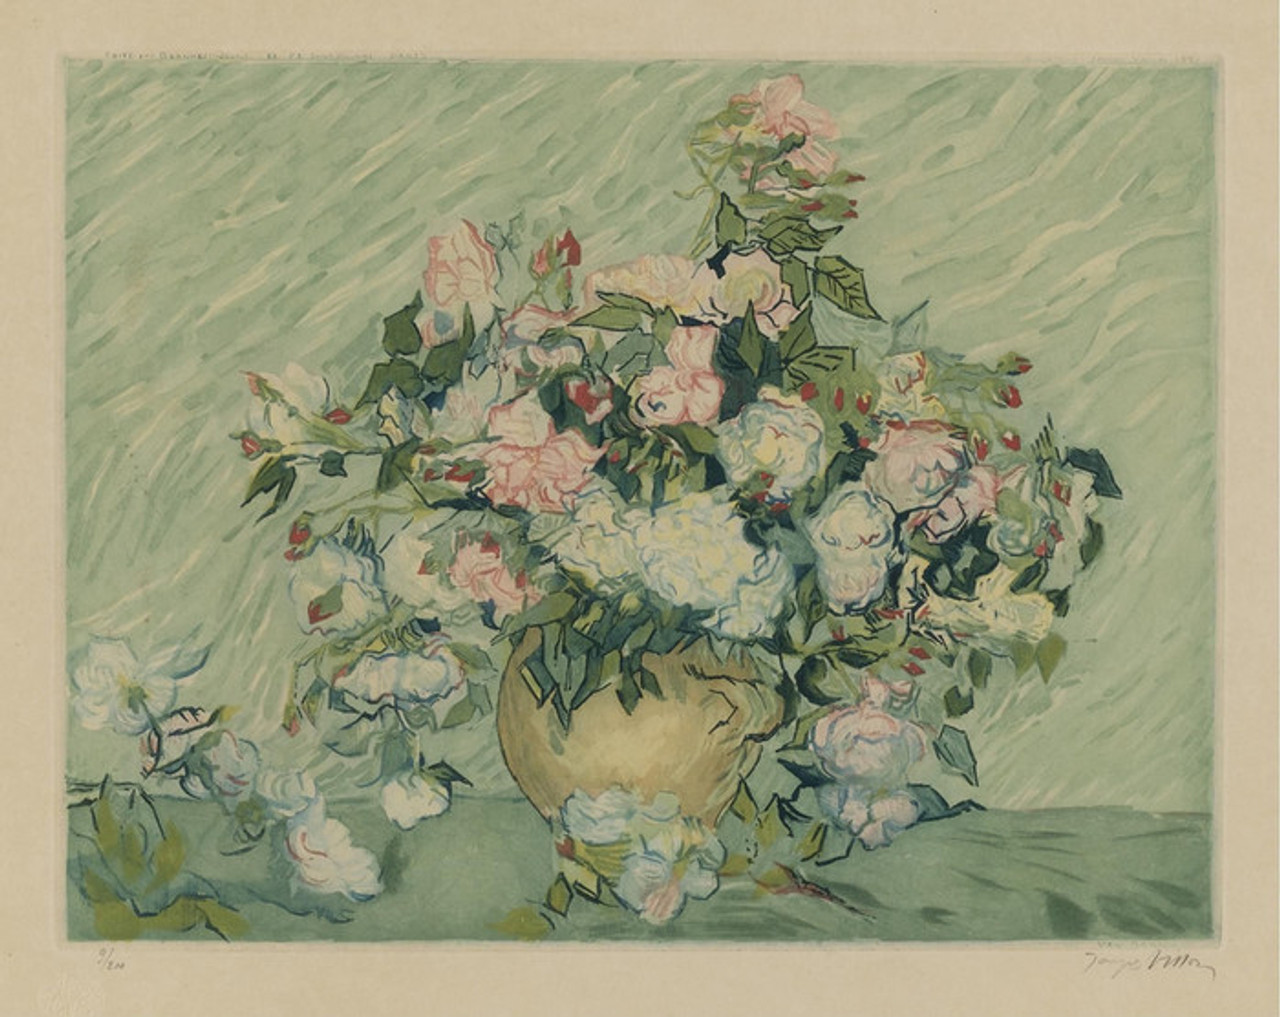 Vincent van Gogh, Roses